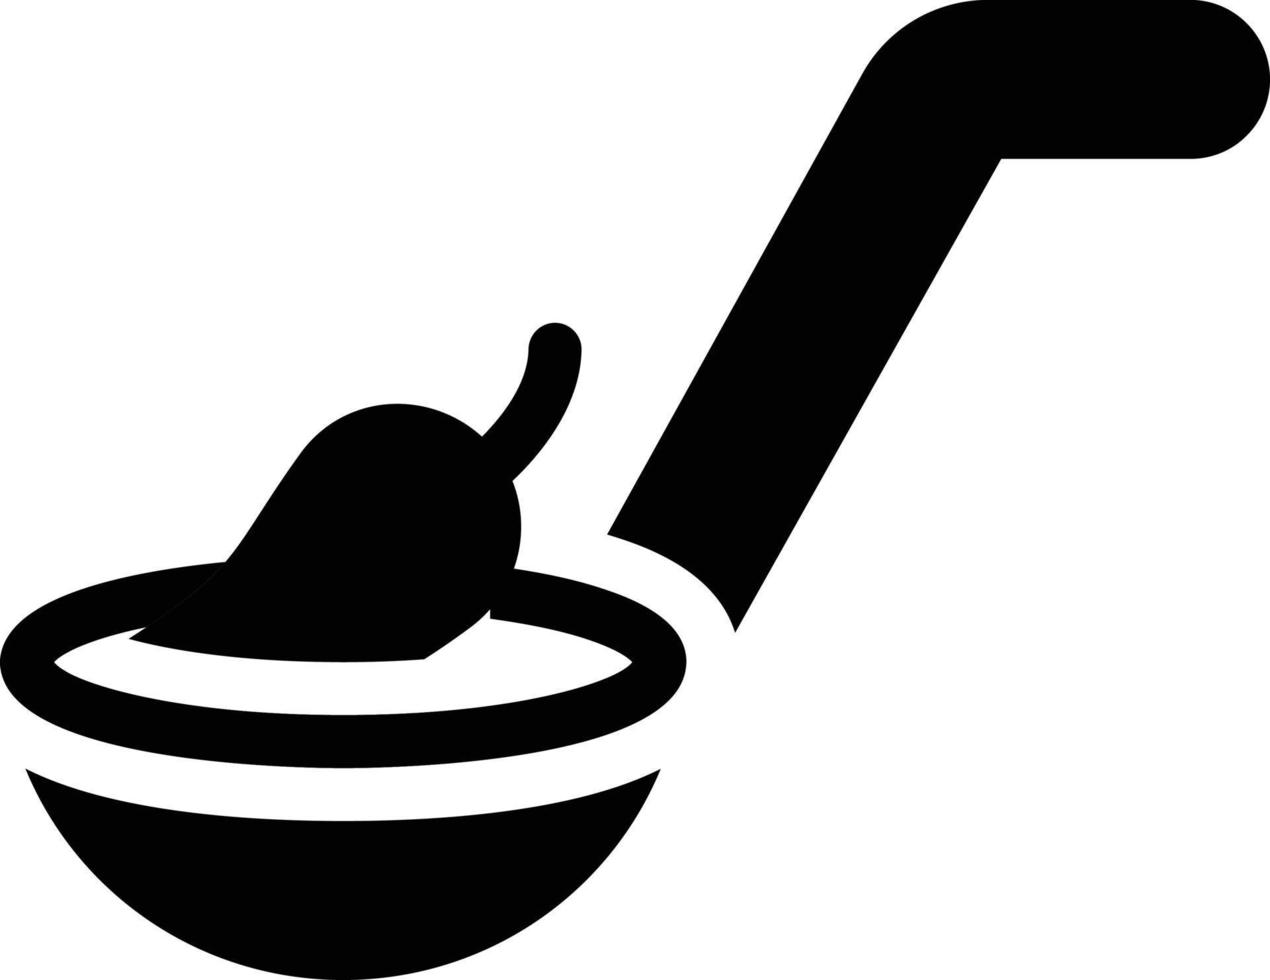 matlagning vektor illustration på en bakgrund.premium kvalitet symbols.vector ikoner för begrepp och grafisk design.